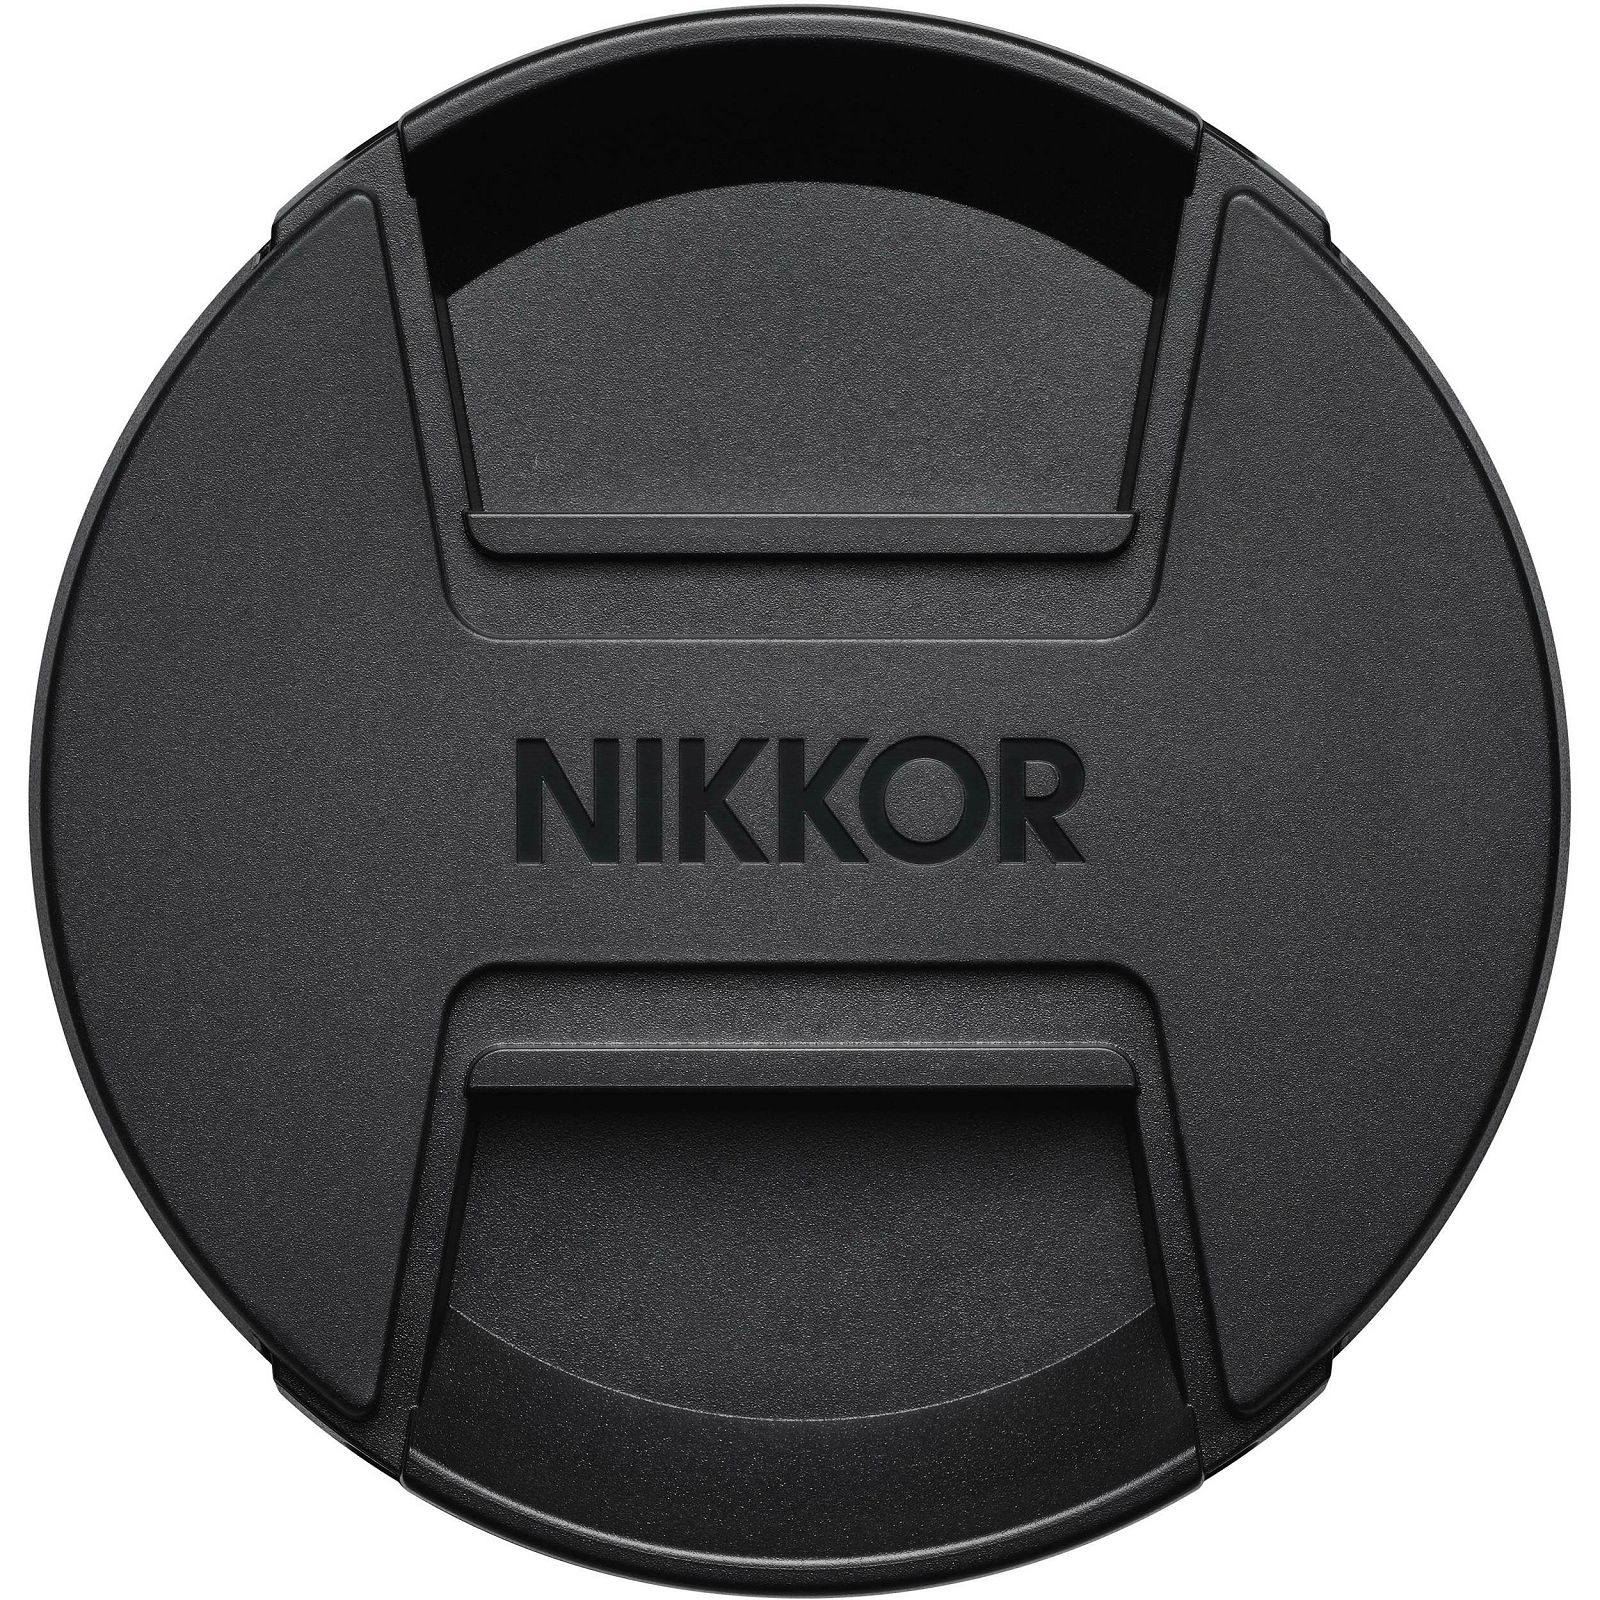 Nikon Z 70-200mm f/2.8 VR S Nikkor telefoto objektiv (JMA709DA)